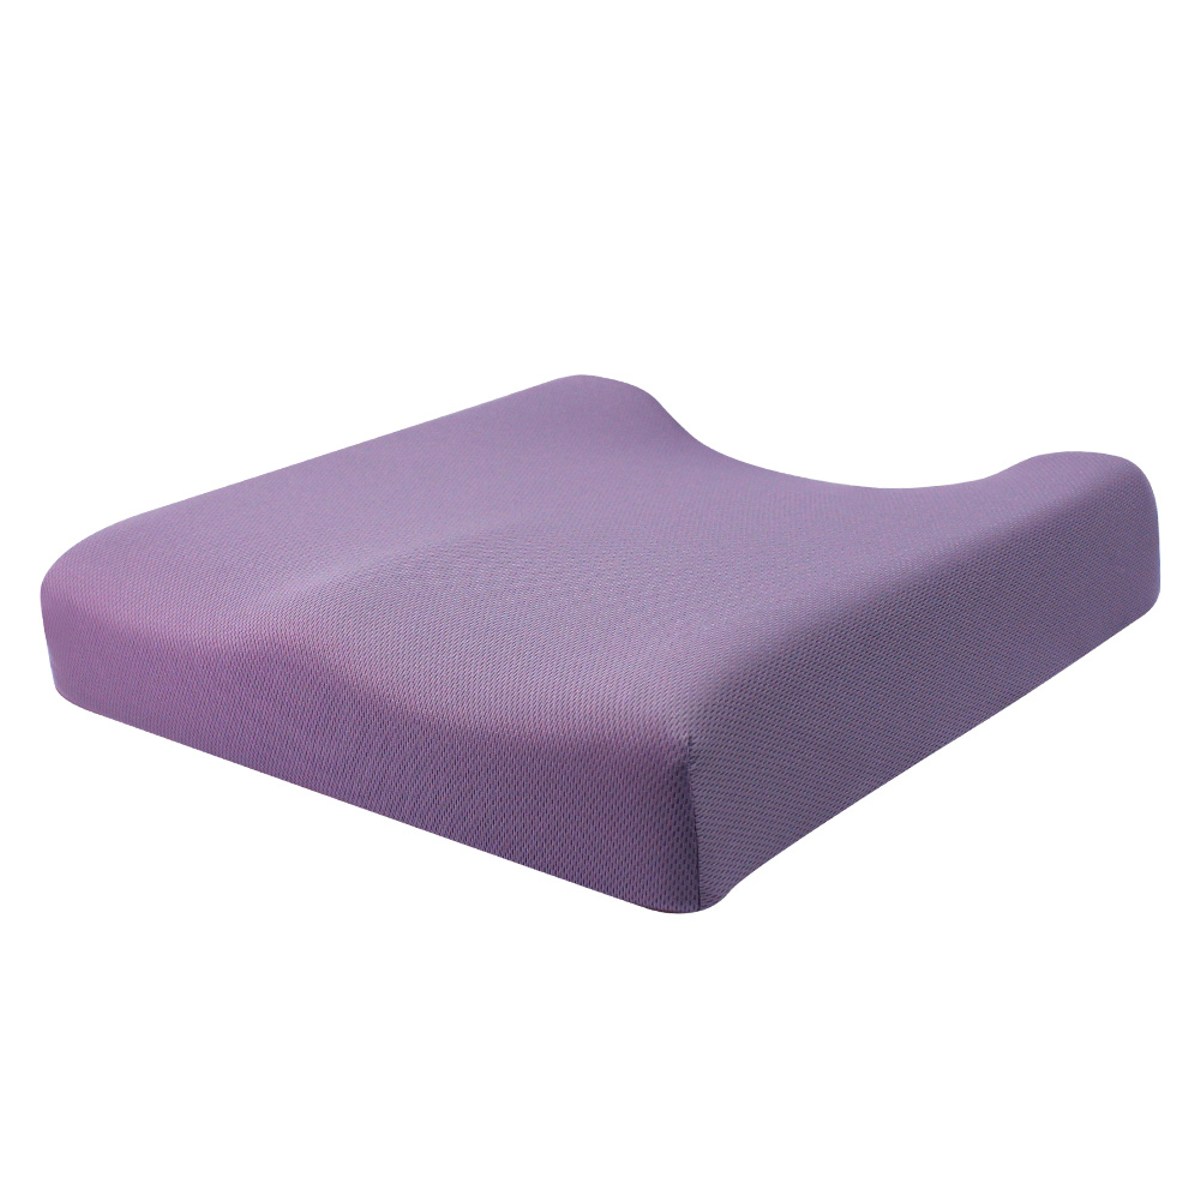 hola 高密度抗菌健康塑型释压坐垫紫色